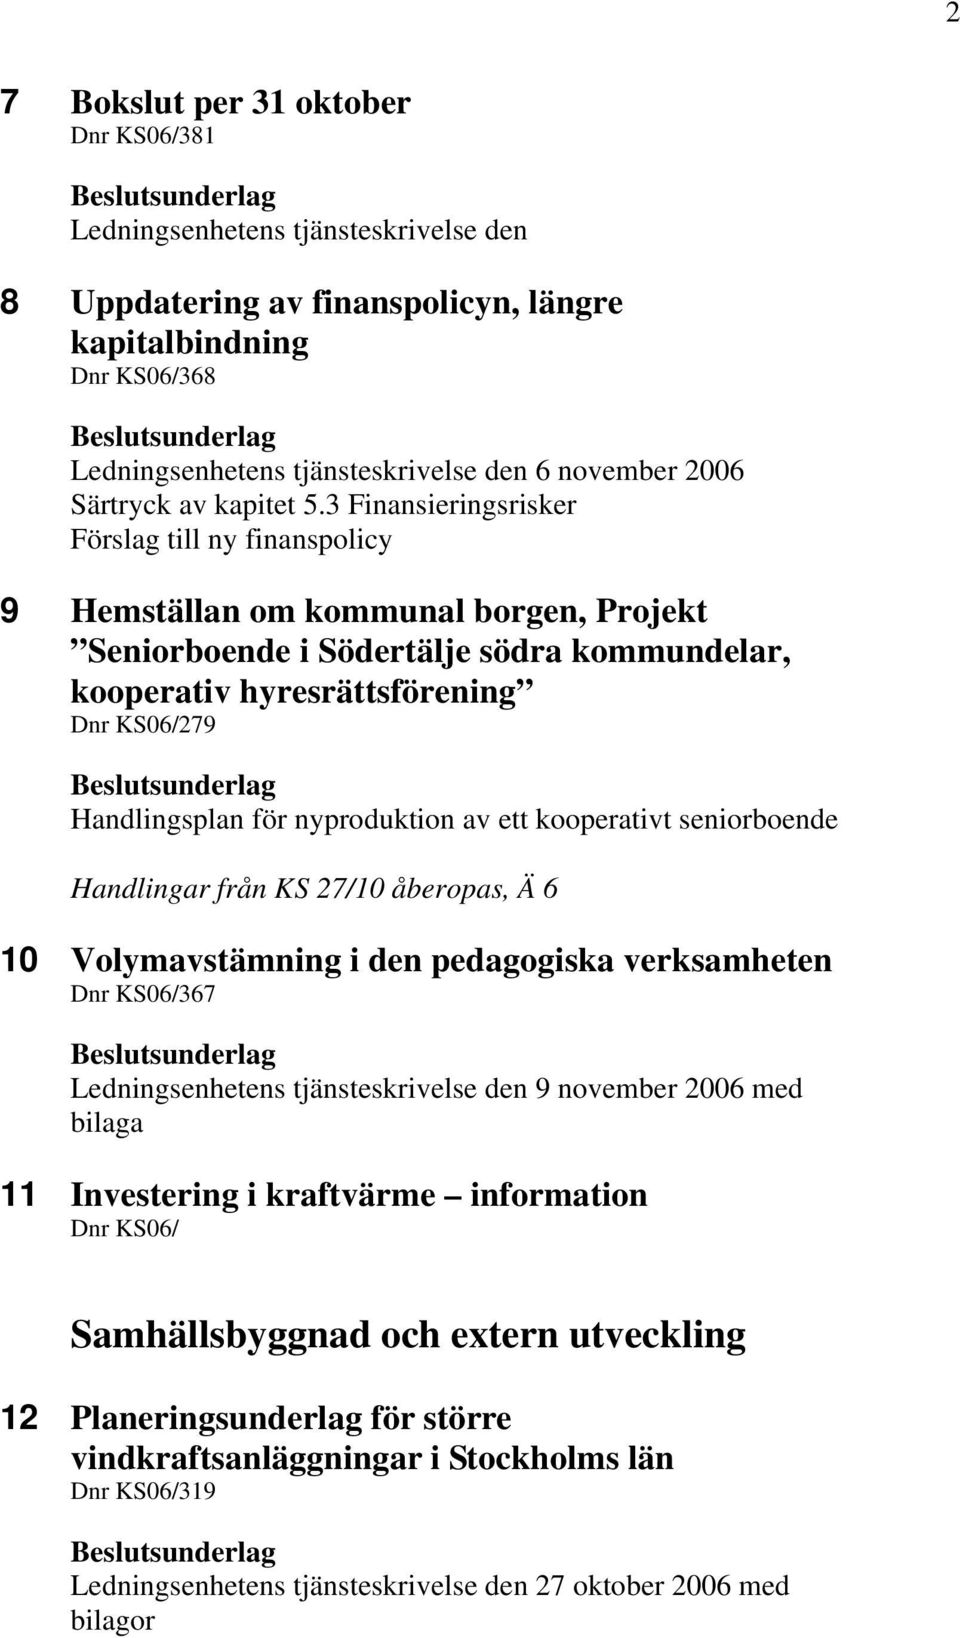 3 Finansieringsrisker Förslag till ny finanspolicy 9 Hemställan om kommunal borgen, Projekt Seniorboende i Södertälje södra kommundelar, kooperativ hyresrättsförening 279 Handlingsplan för